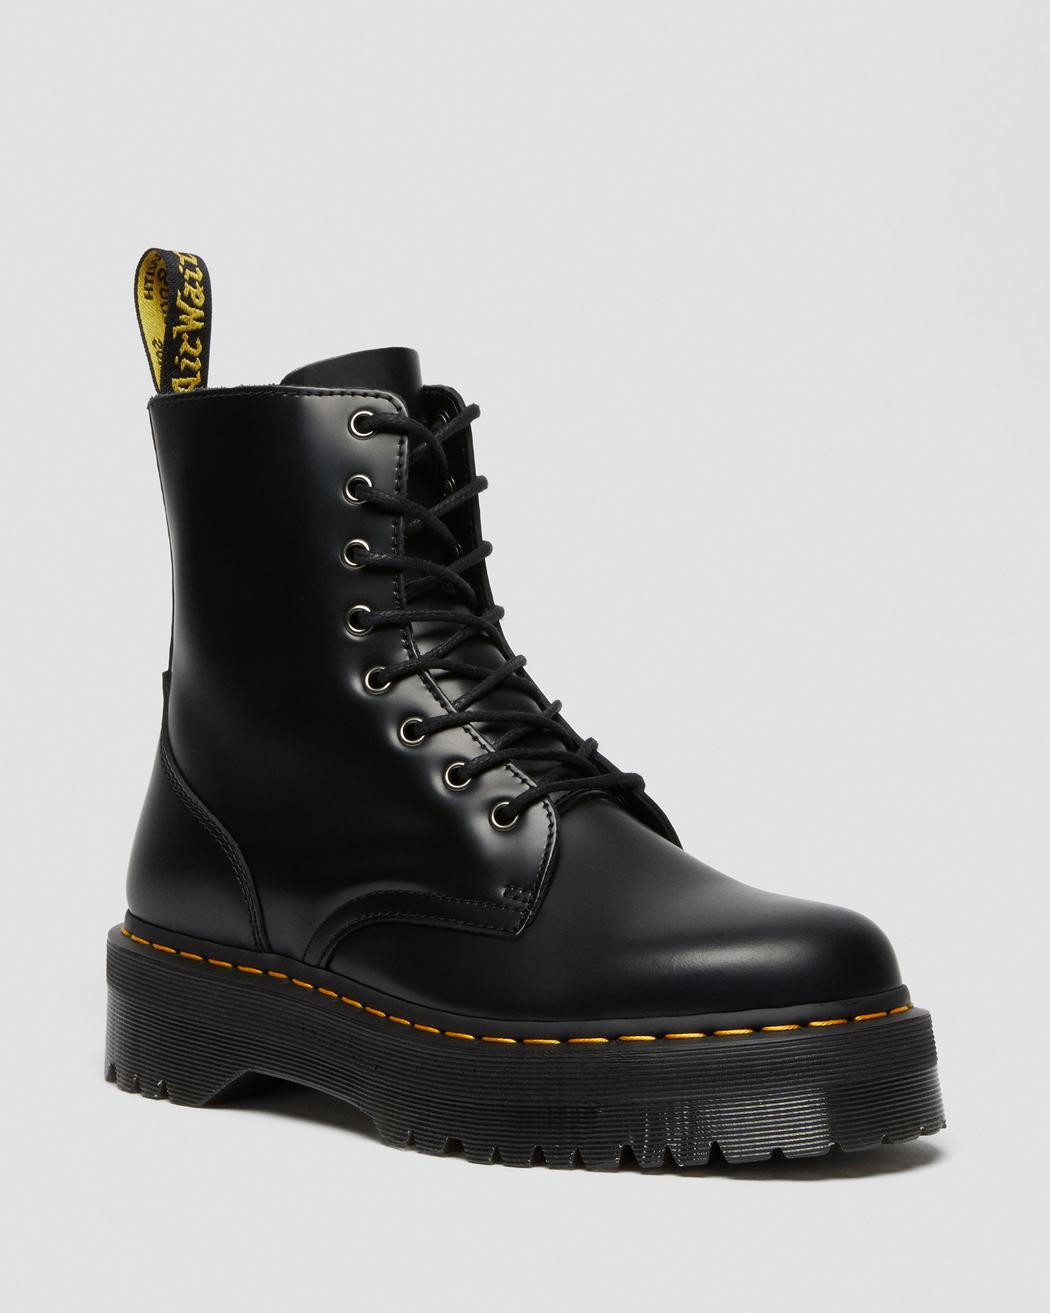 Jadon Black Smooth Leather Platform Boots DM15265001 - 6